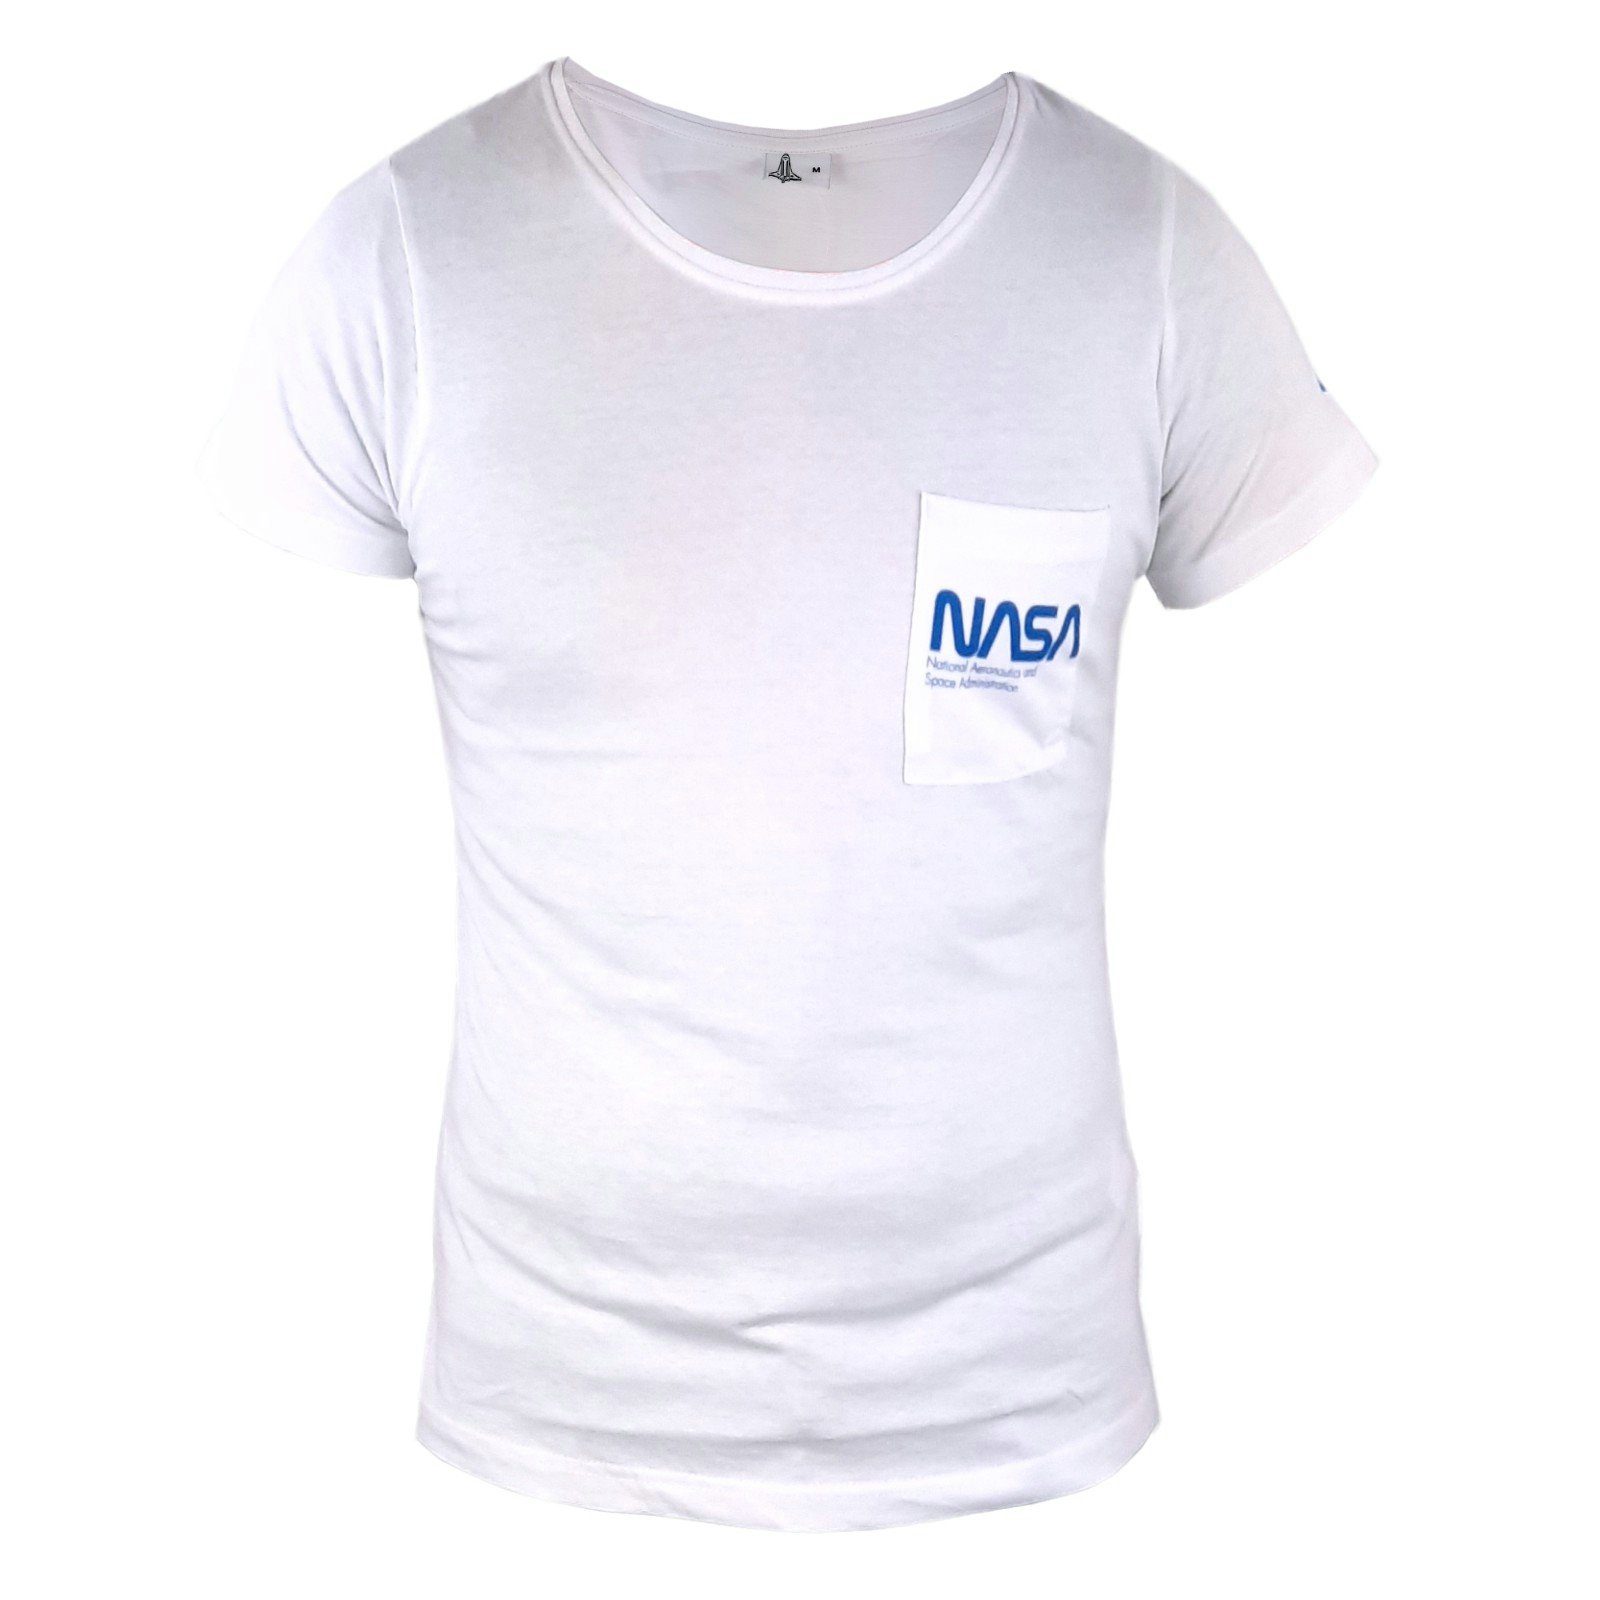 NASA T-Shirt NASA Space Center Damen kurzarm Shirt Gr. S bis XL, 100% Baumwolle